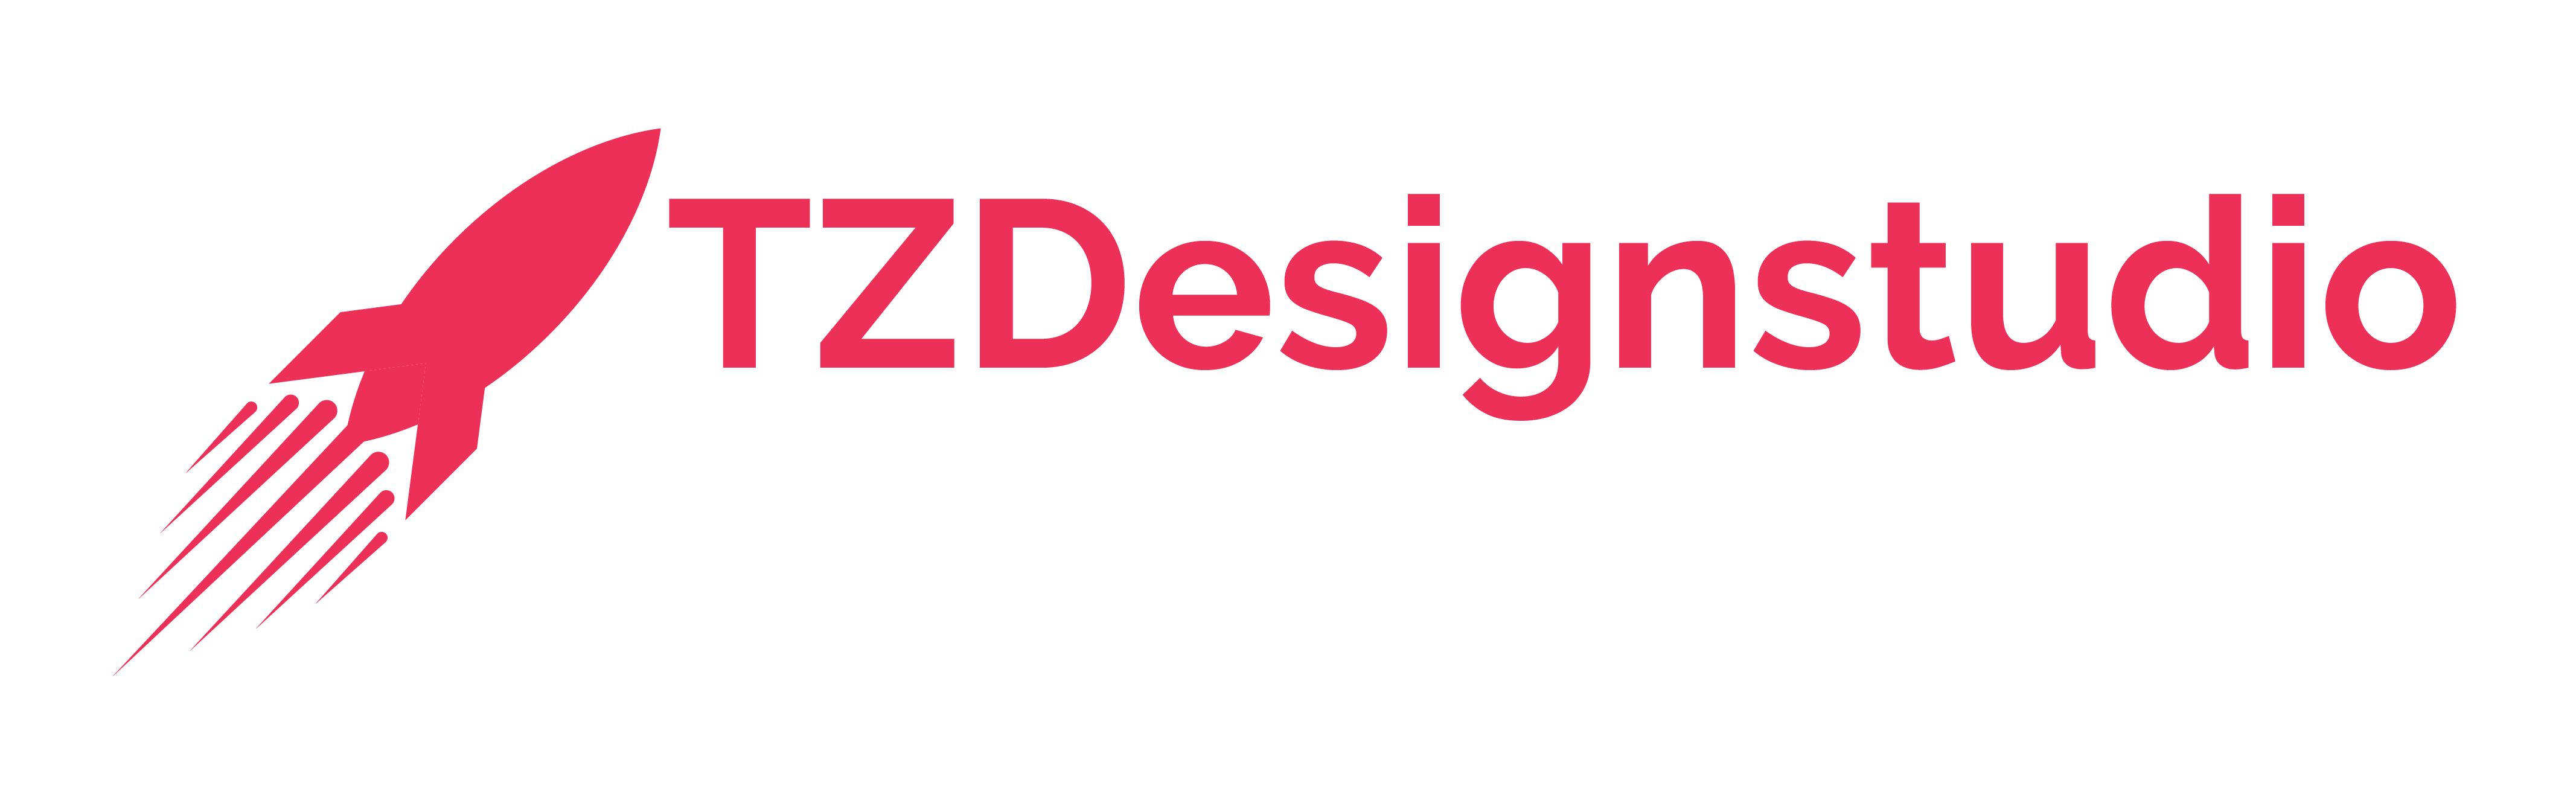 TZDesignsttudio Logo